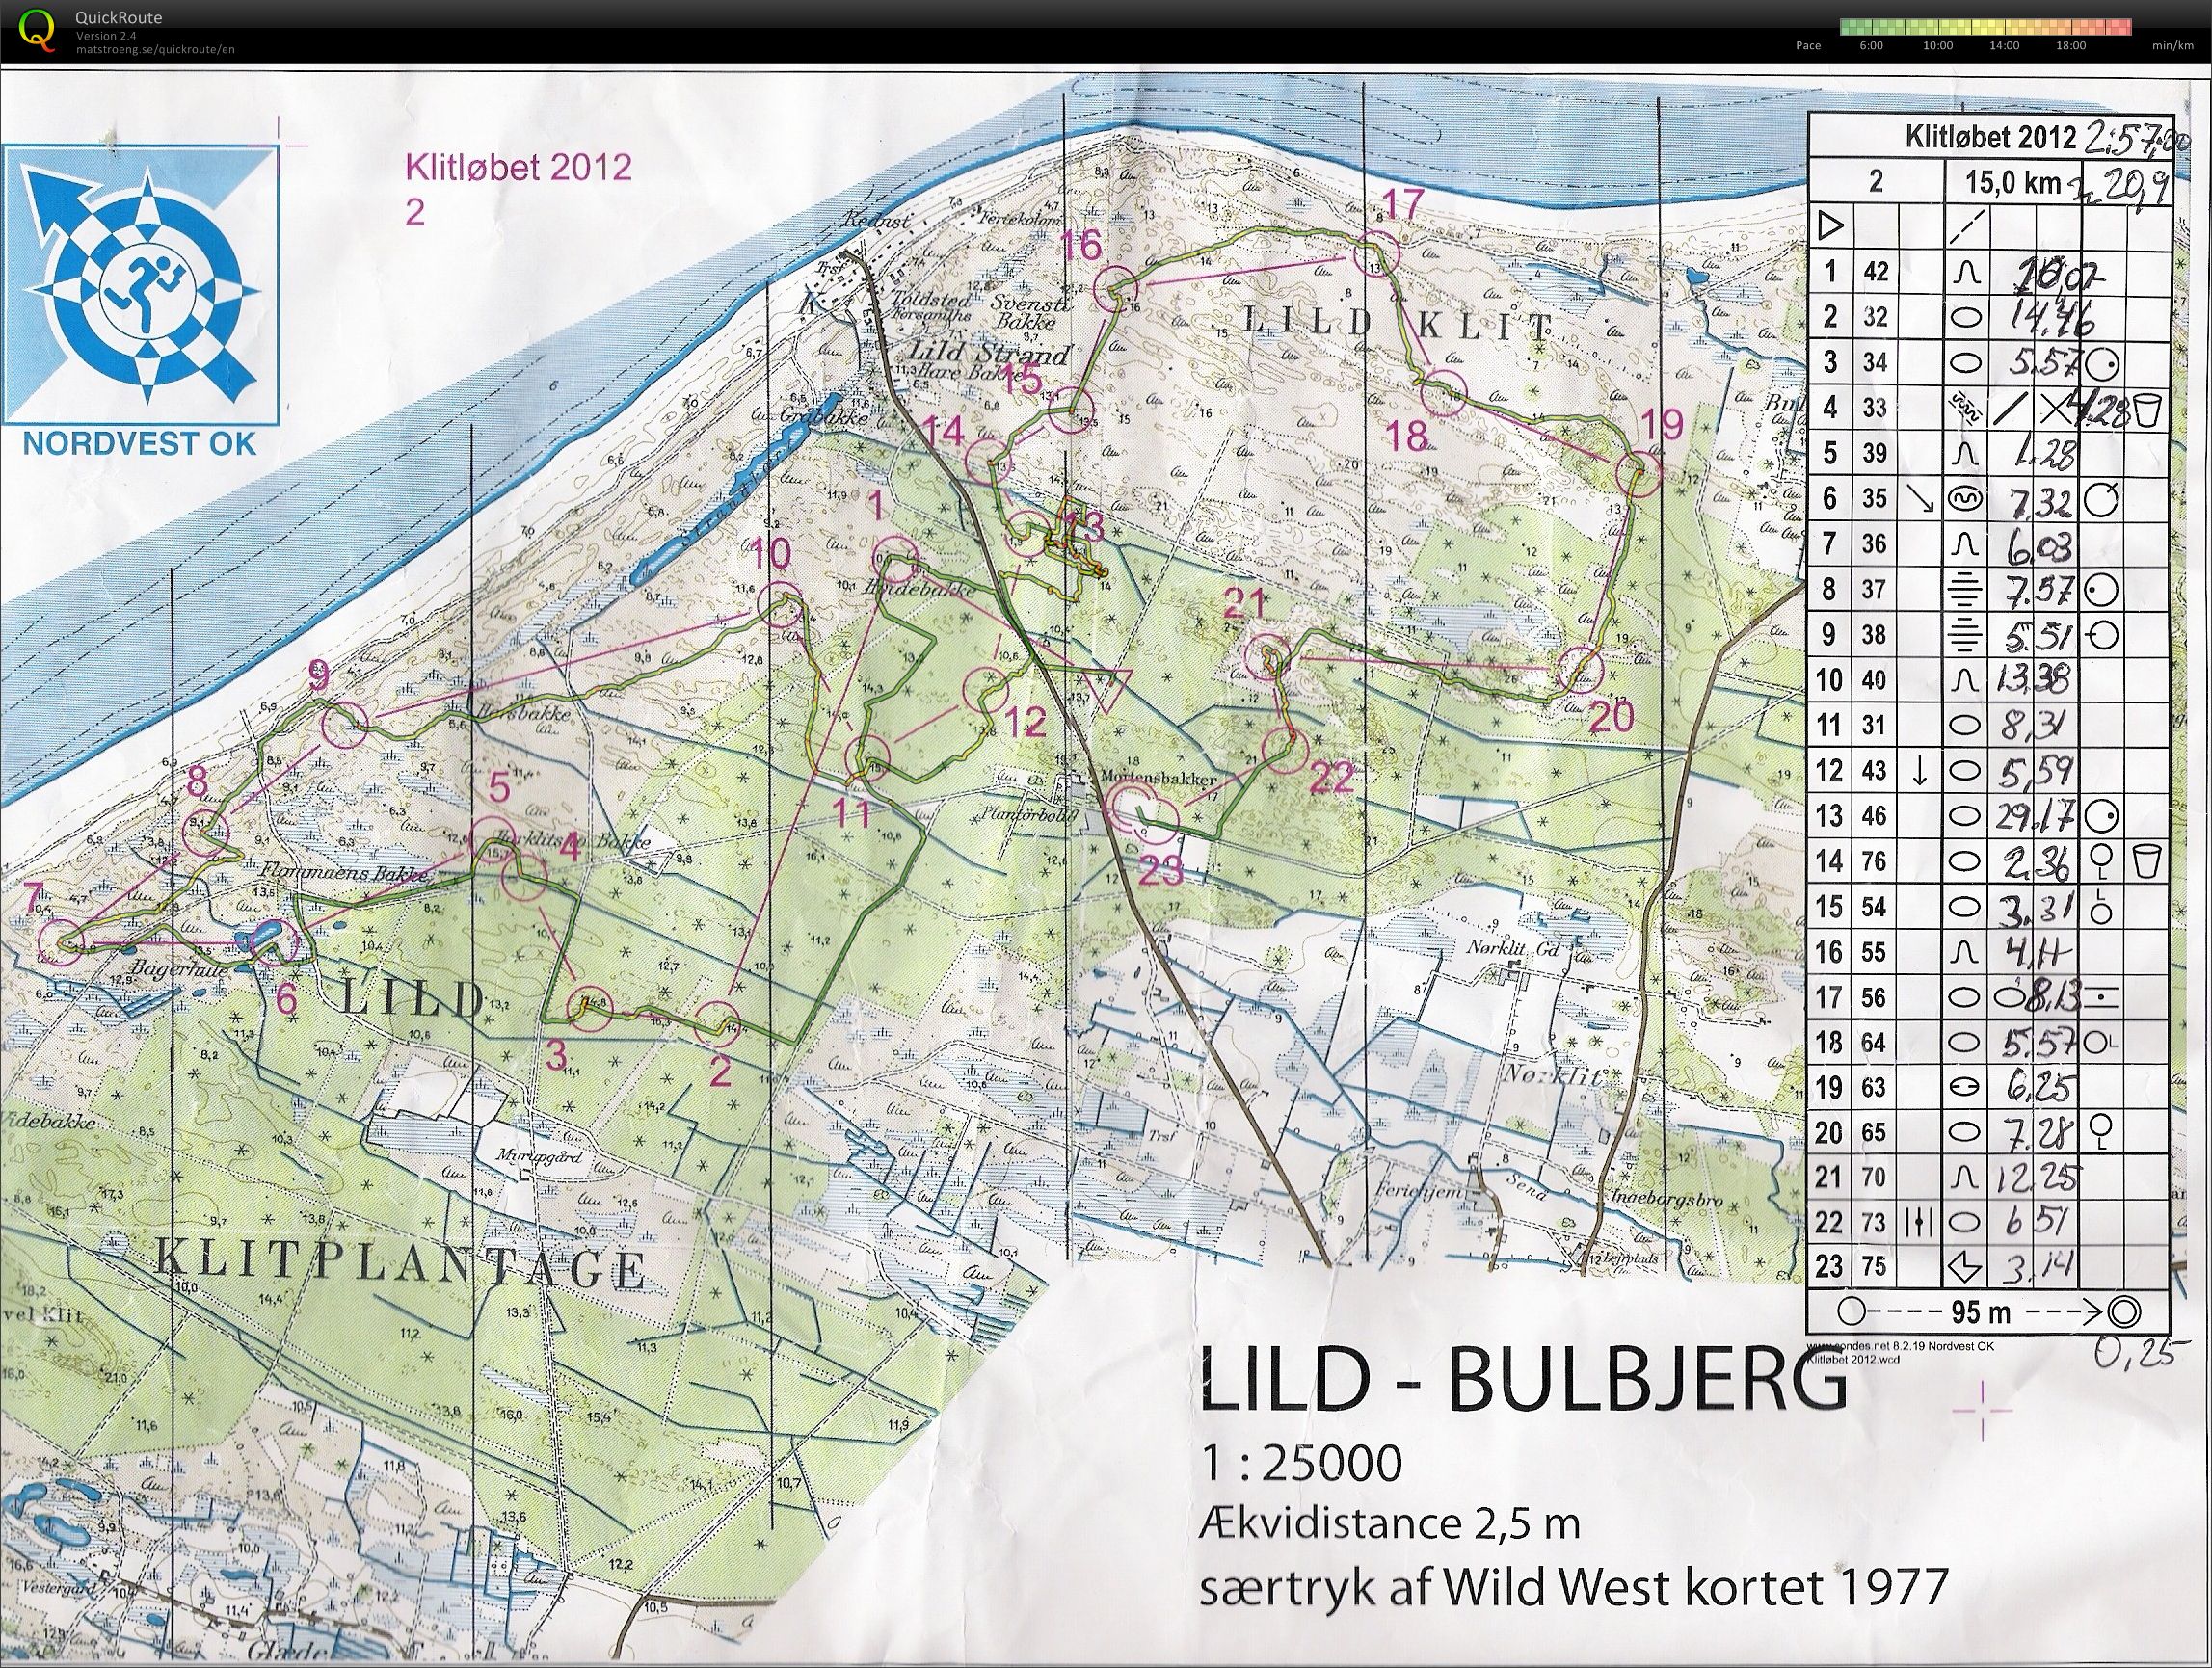 Klitløbet - Lild-Bulbjerg - 2012 (17.06.2012)